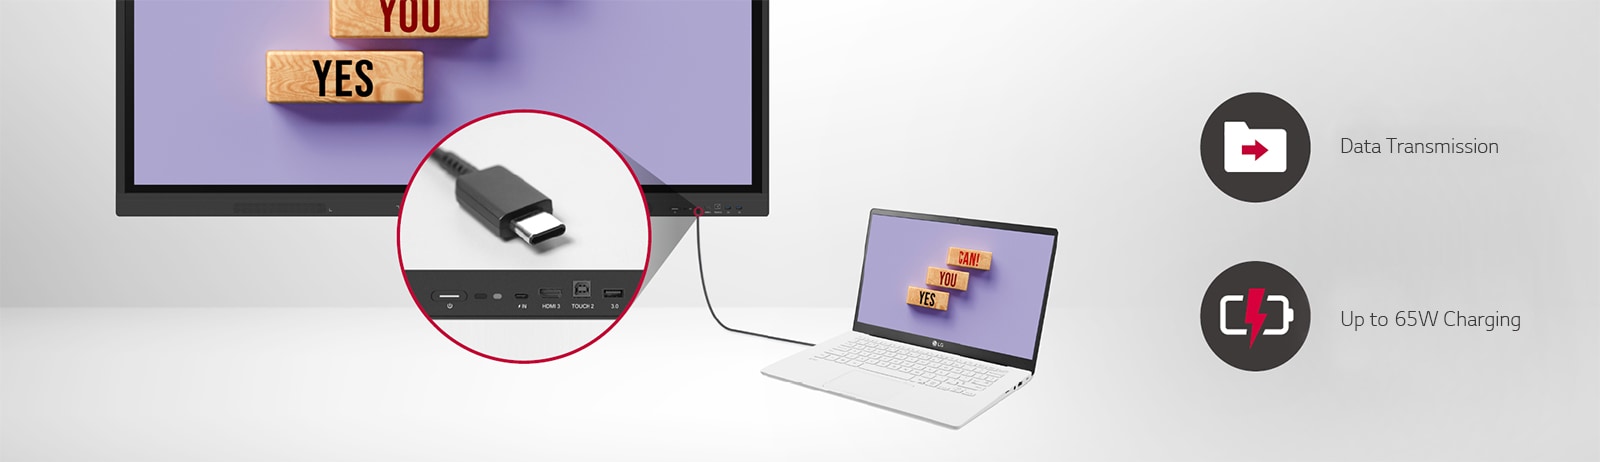 O LG CreateBoard transmite dados facilmente via conectividade USB-C e pode carregar até 65W.